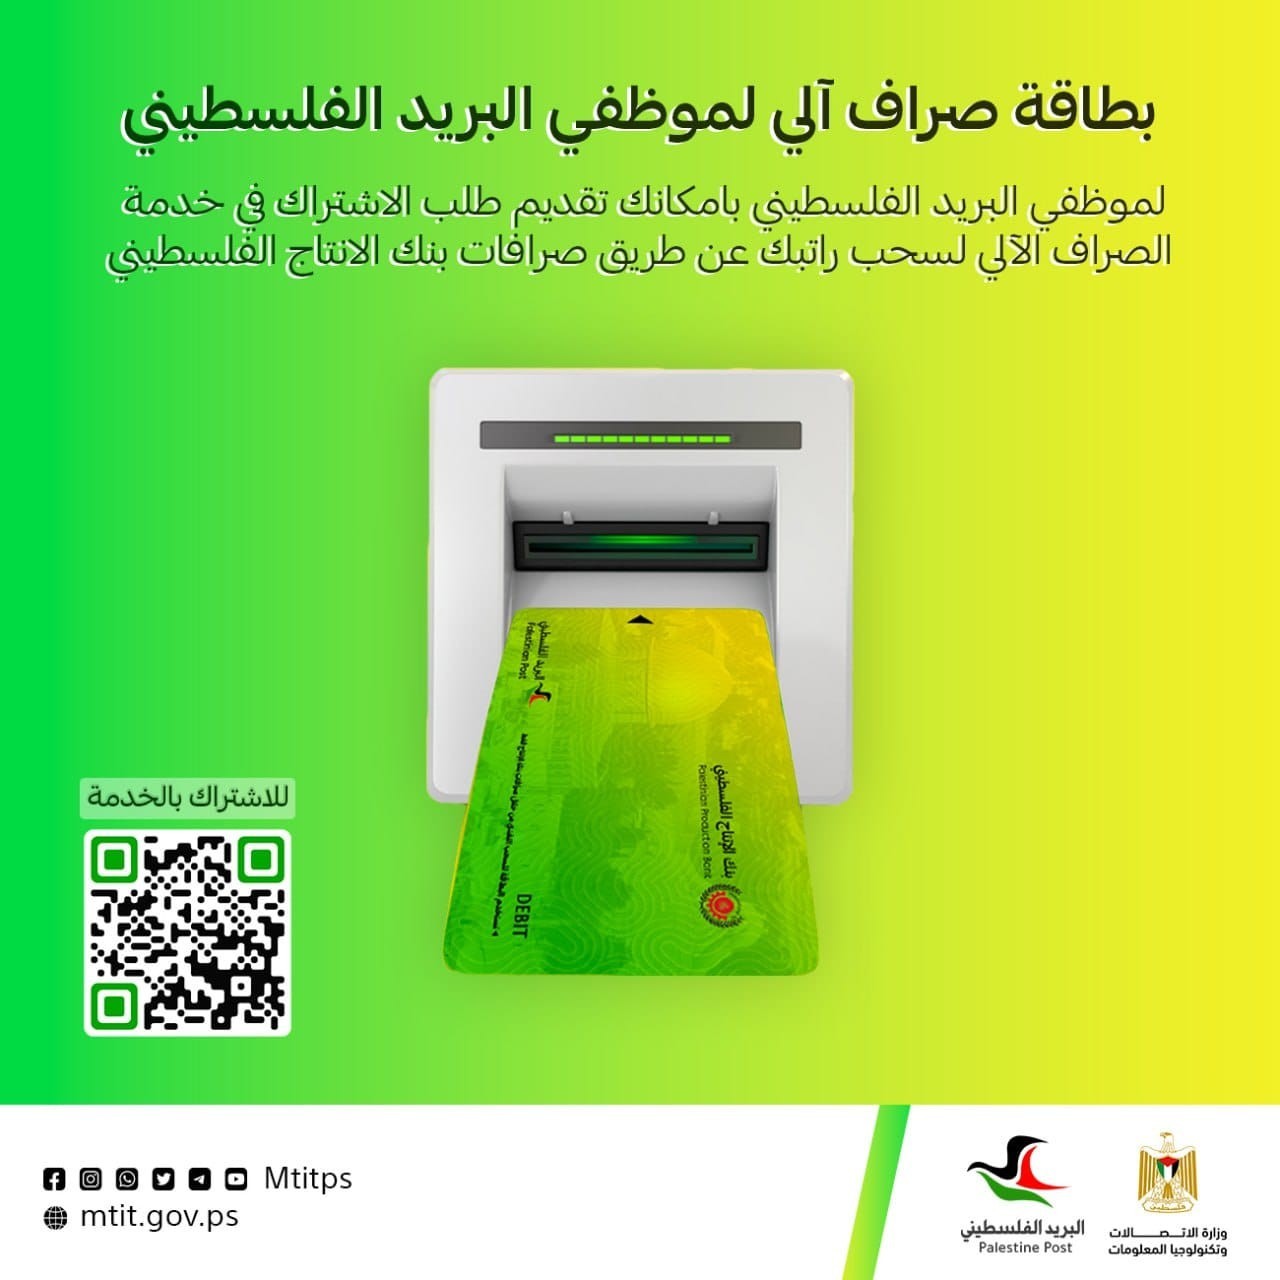 وزارة الاتصالات بغزة تُطلق بطاقة صراف آلي جديدة لموظفيها